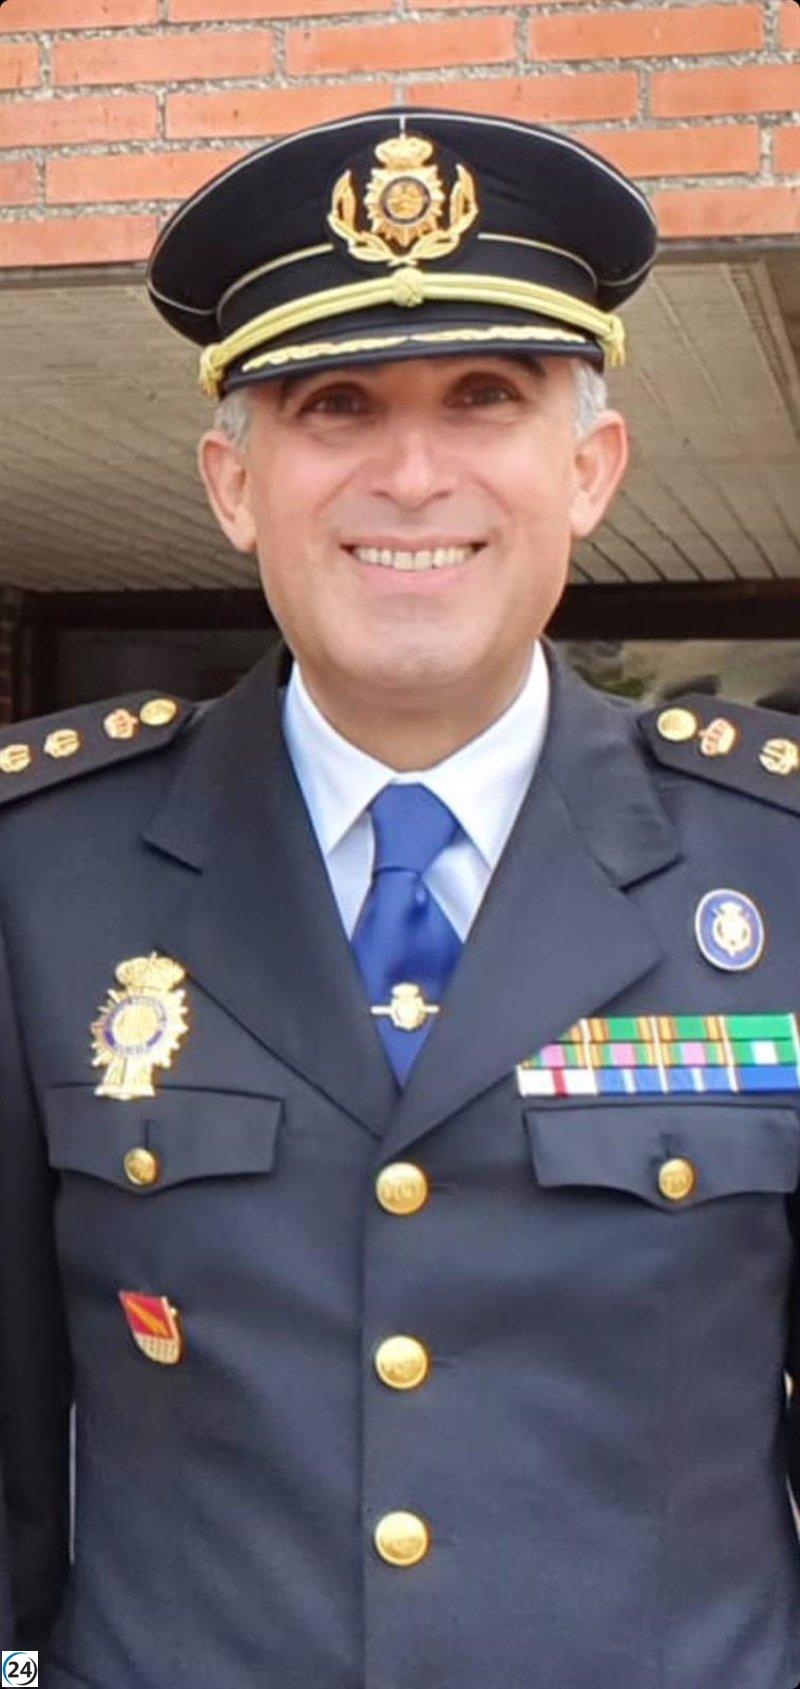 Comisario Manuel Rodríguez, responsable de Seguridad Ciudadana en Madrid, es designado jefe de la Policía en Cataluña.